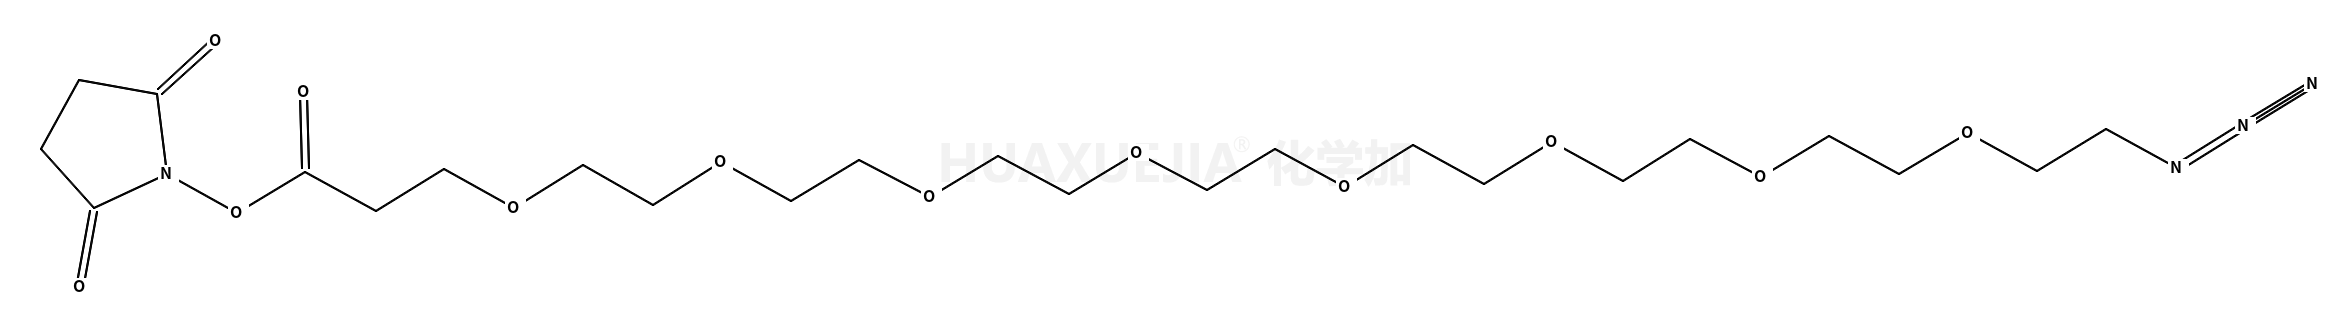 N3-PEG8-CH2CH2COONHS Ester